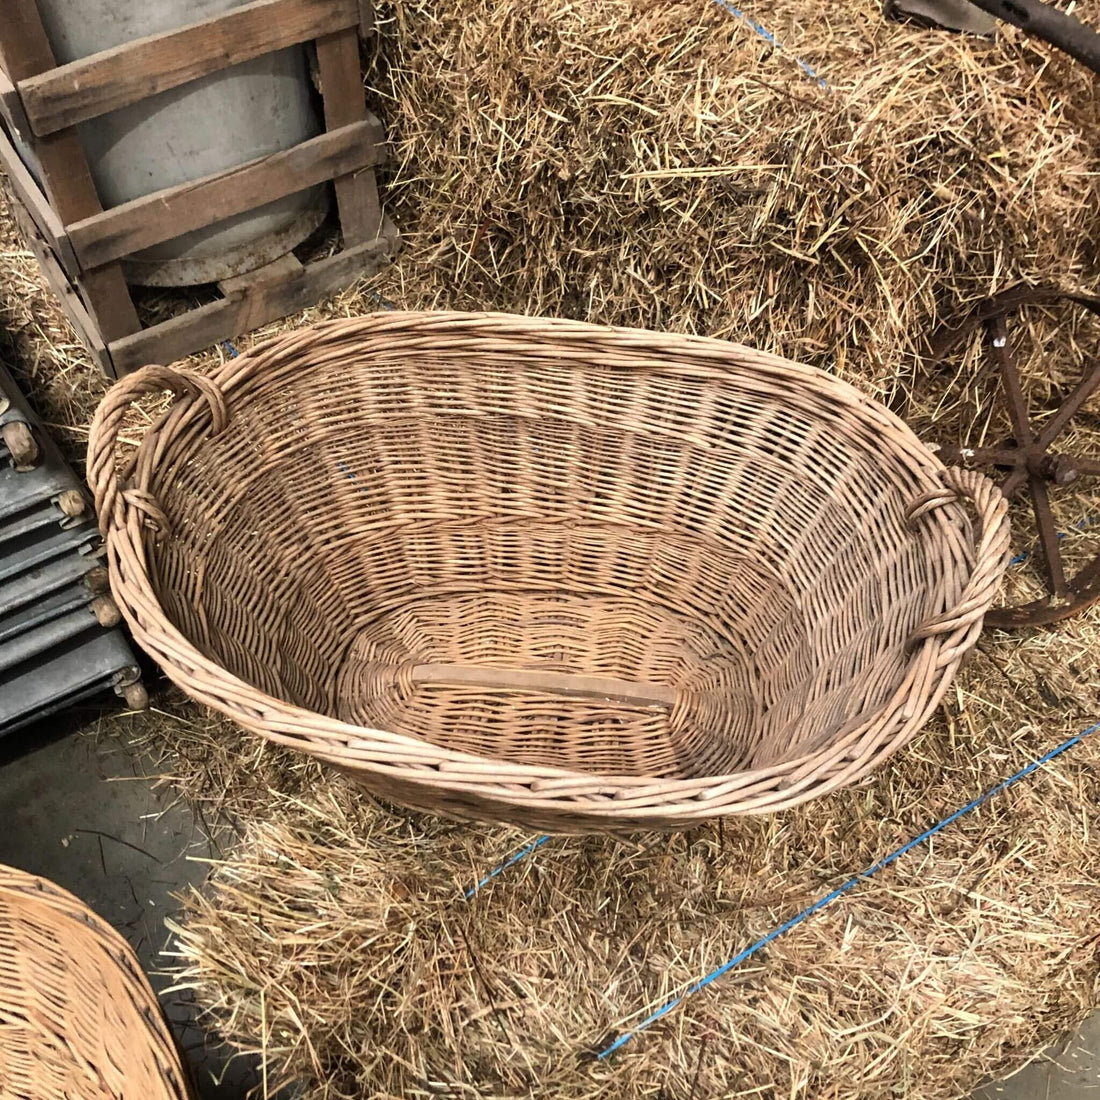 Inside a wicker basket